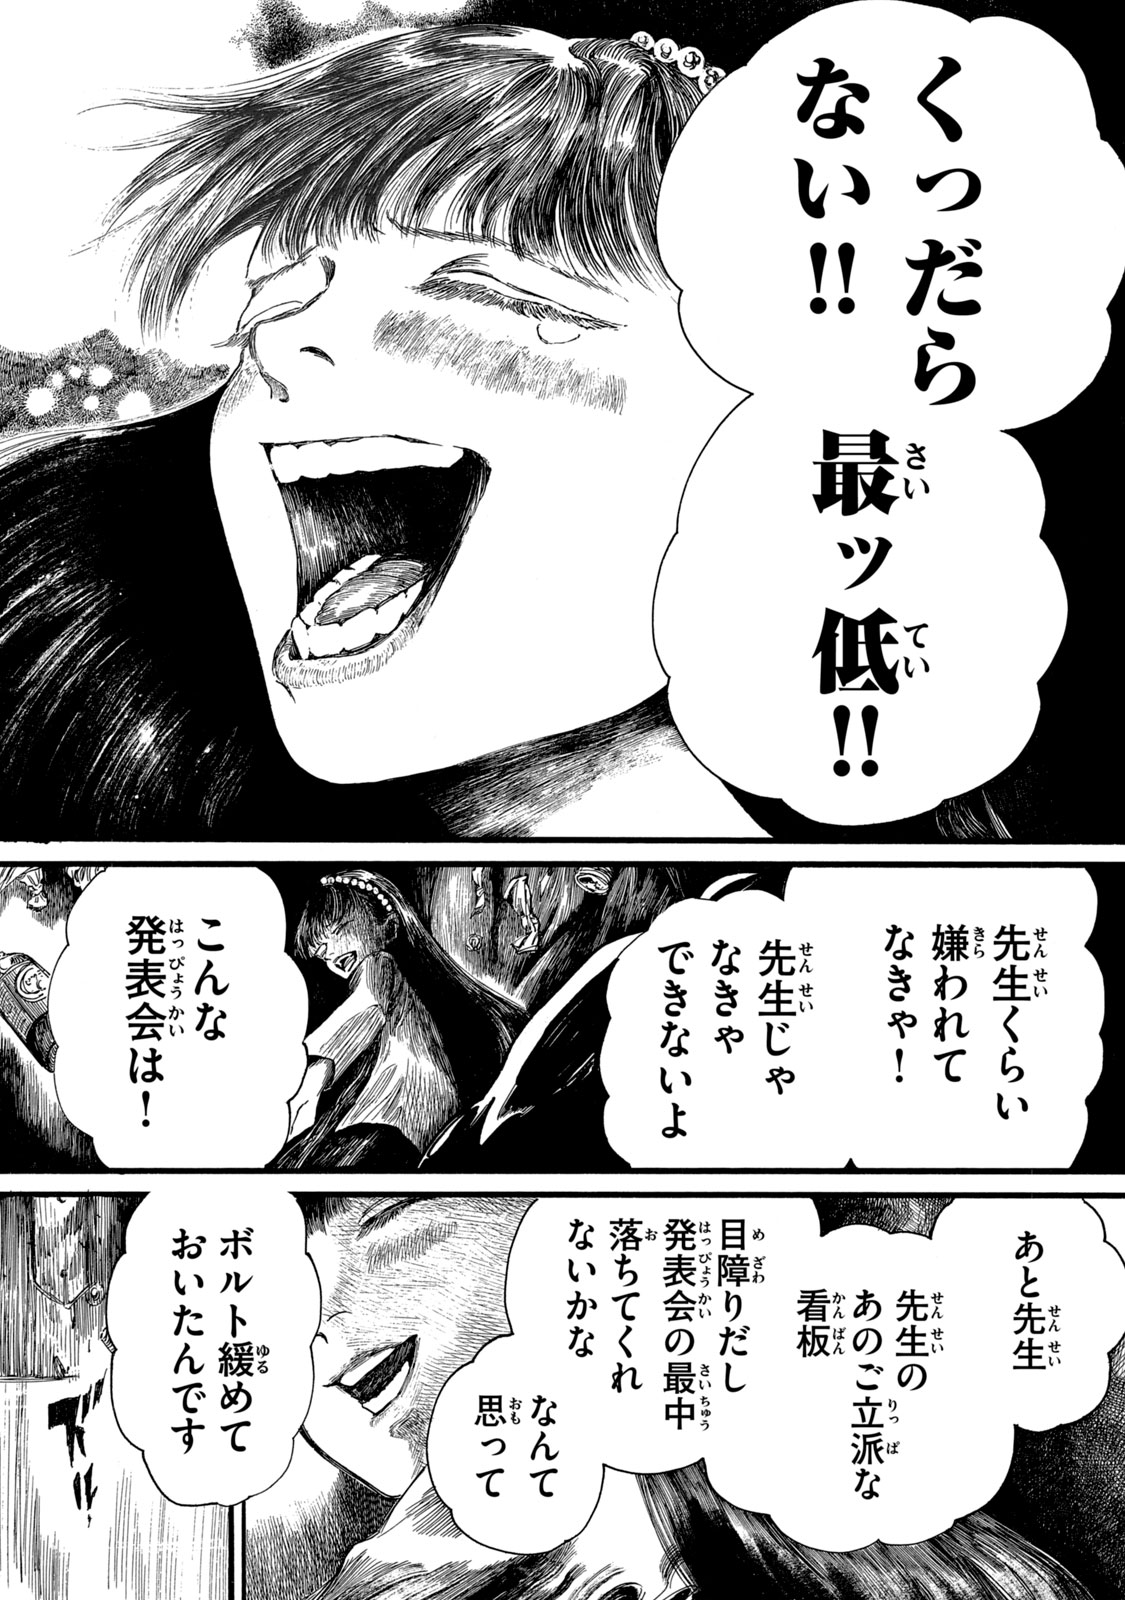 Watashi no Hara no Naka no Bakemono - Chapter 13 - Page 15